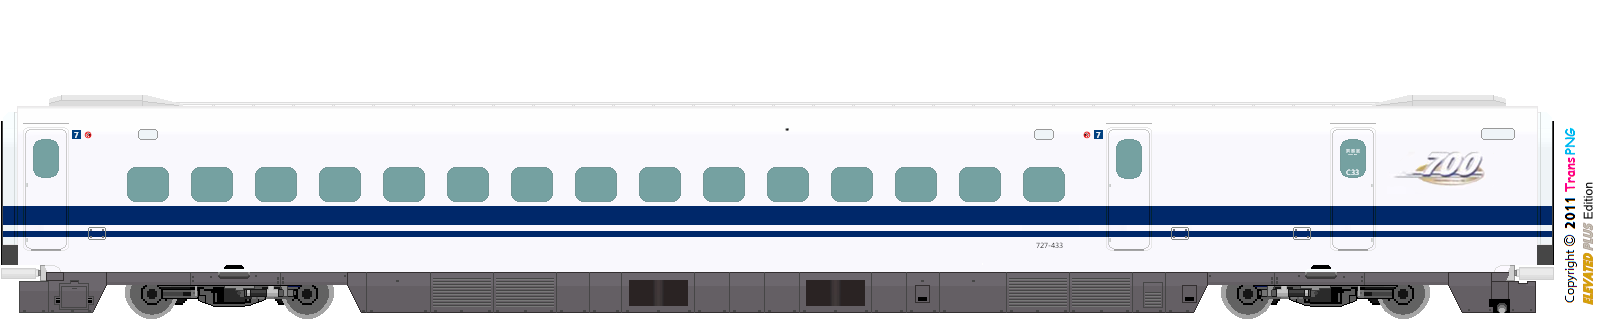 9010 - [9010] Central Japan Railway 52287586083_e1ab99bb44_o